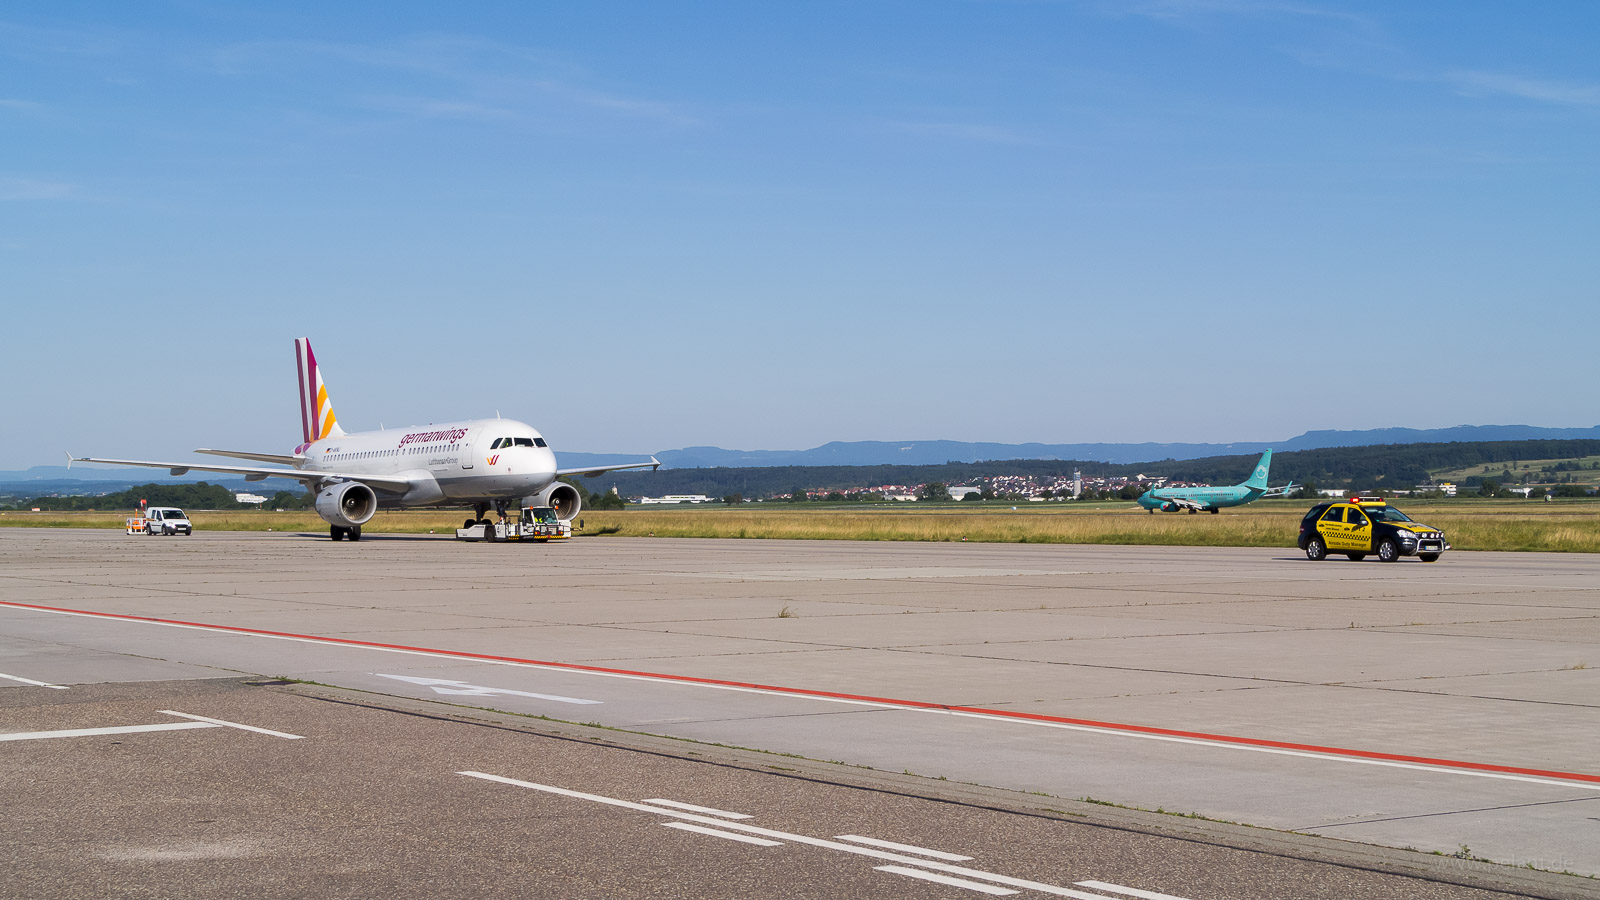 D-AKNJ Germanwings Airbus A319-112 in Stuttgart / STR